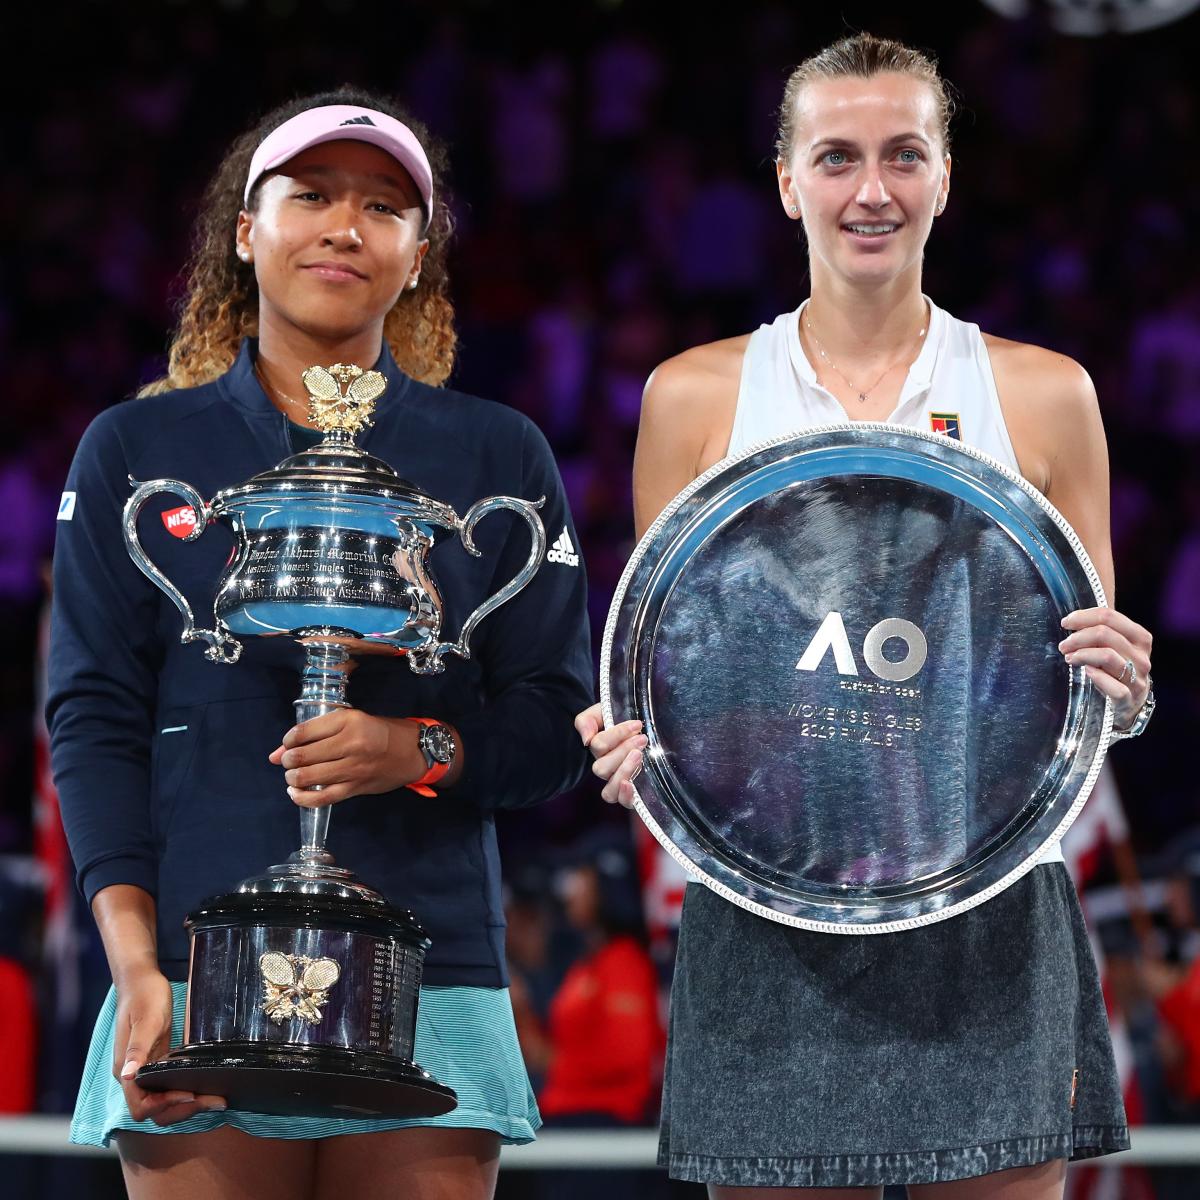 Positiv Personligt kyst Australian Open 2019 Women's Final: Winner, Score and Twitter Reaction |  Bleacher Report | Latest News, Videos and Highlights